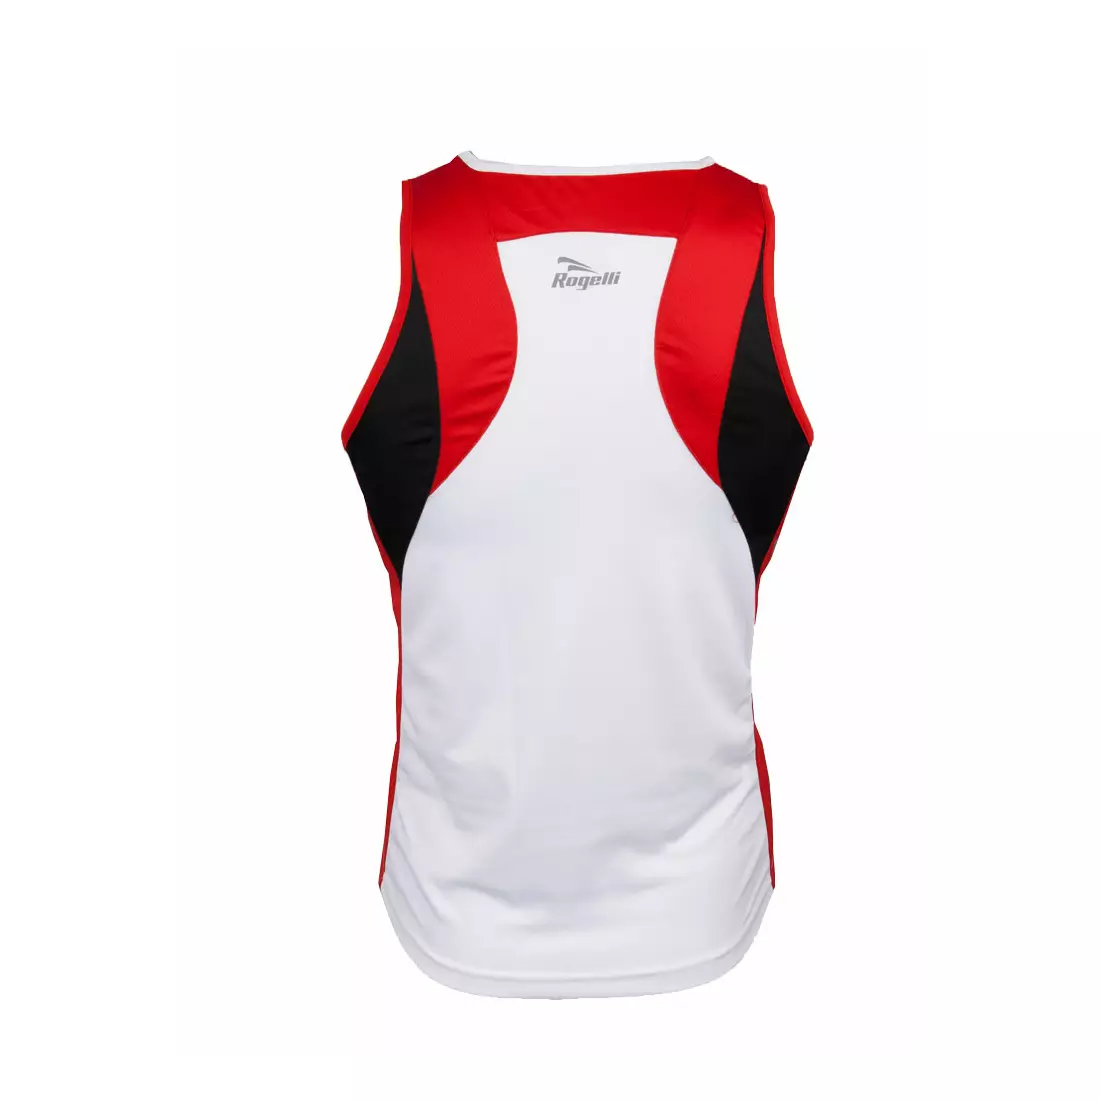 ROGELLI RUN DARBY - ultralehké pánské sportovní tričko bez rukávů